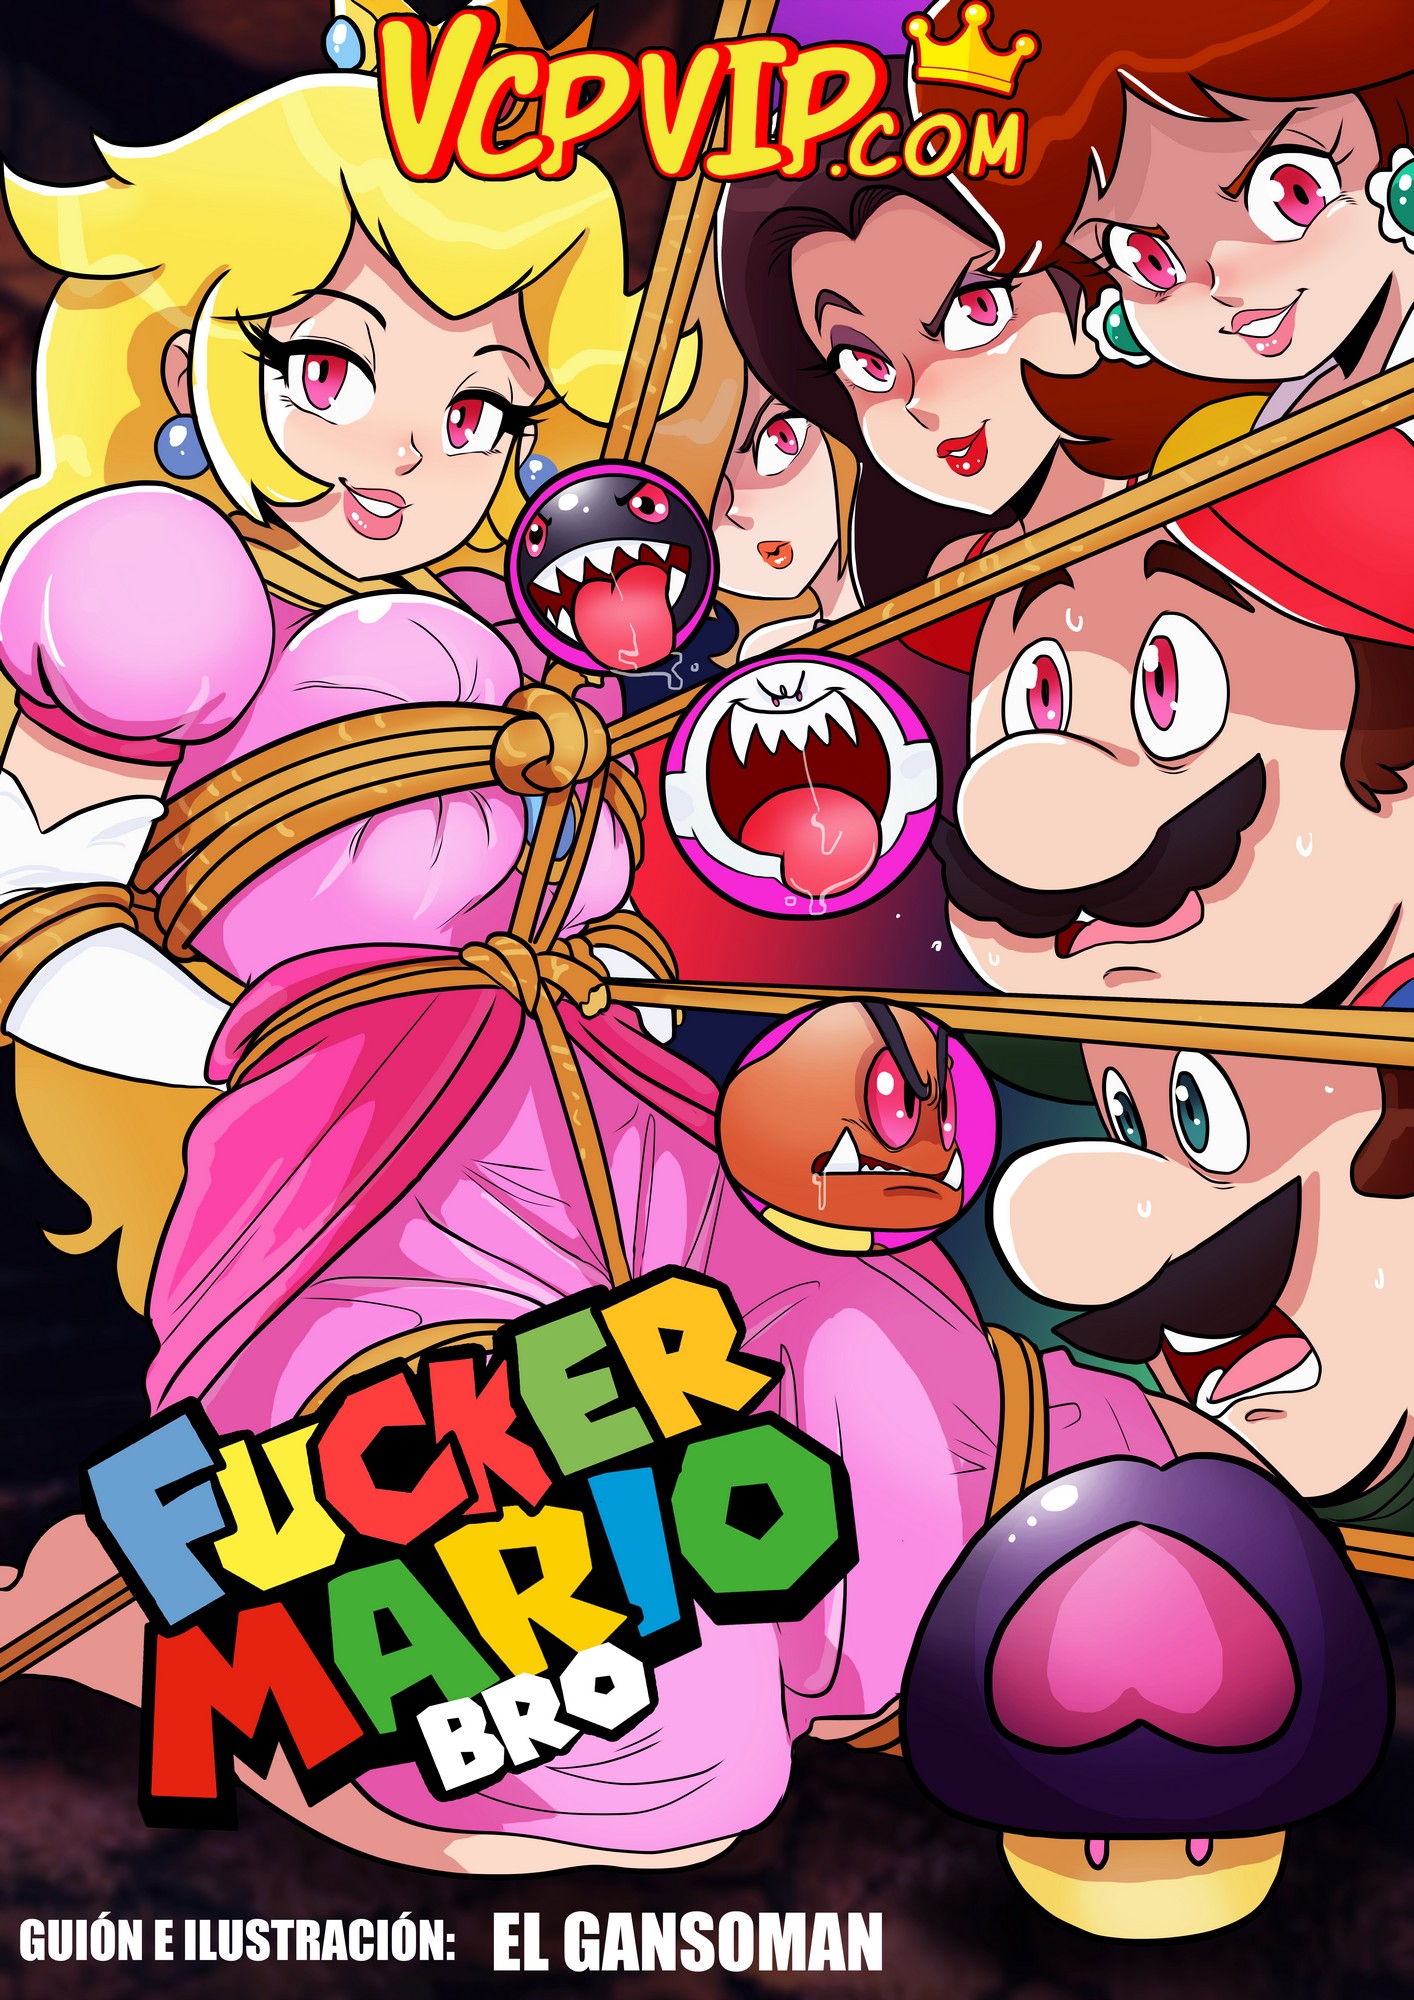 Mario bros comic porno